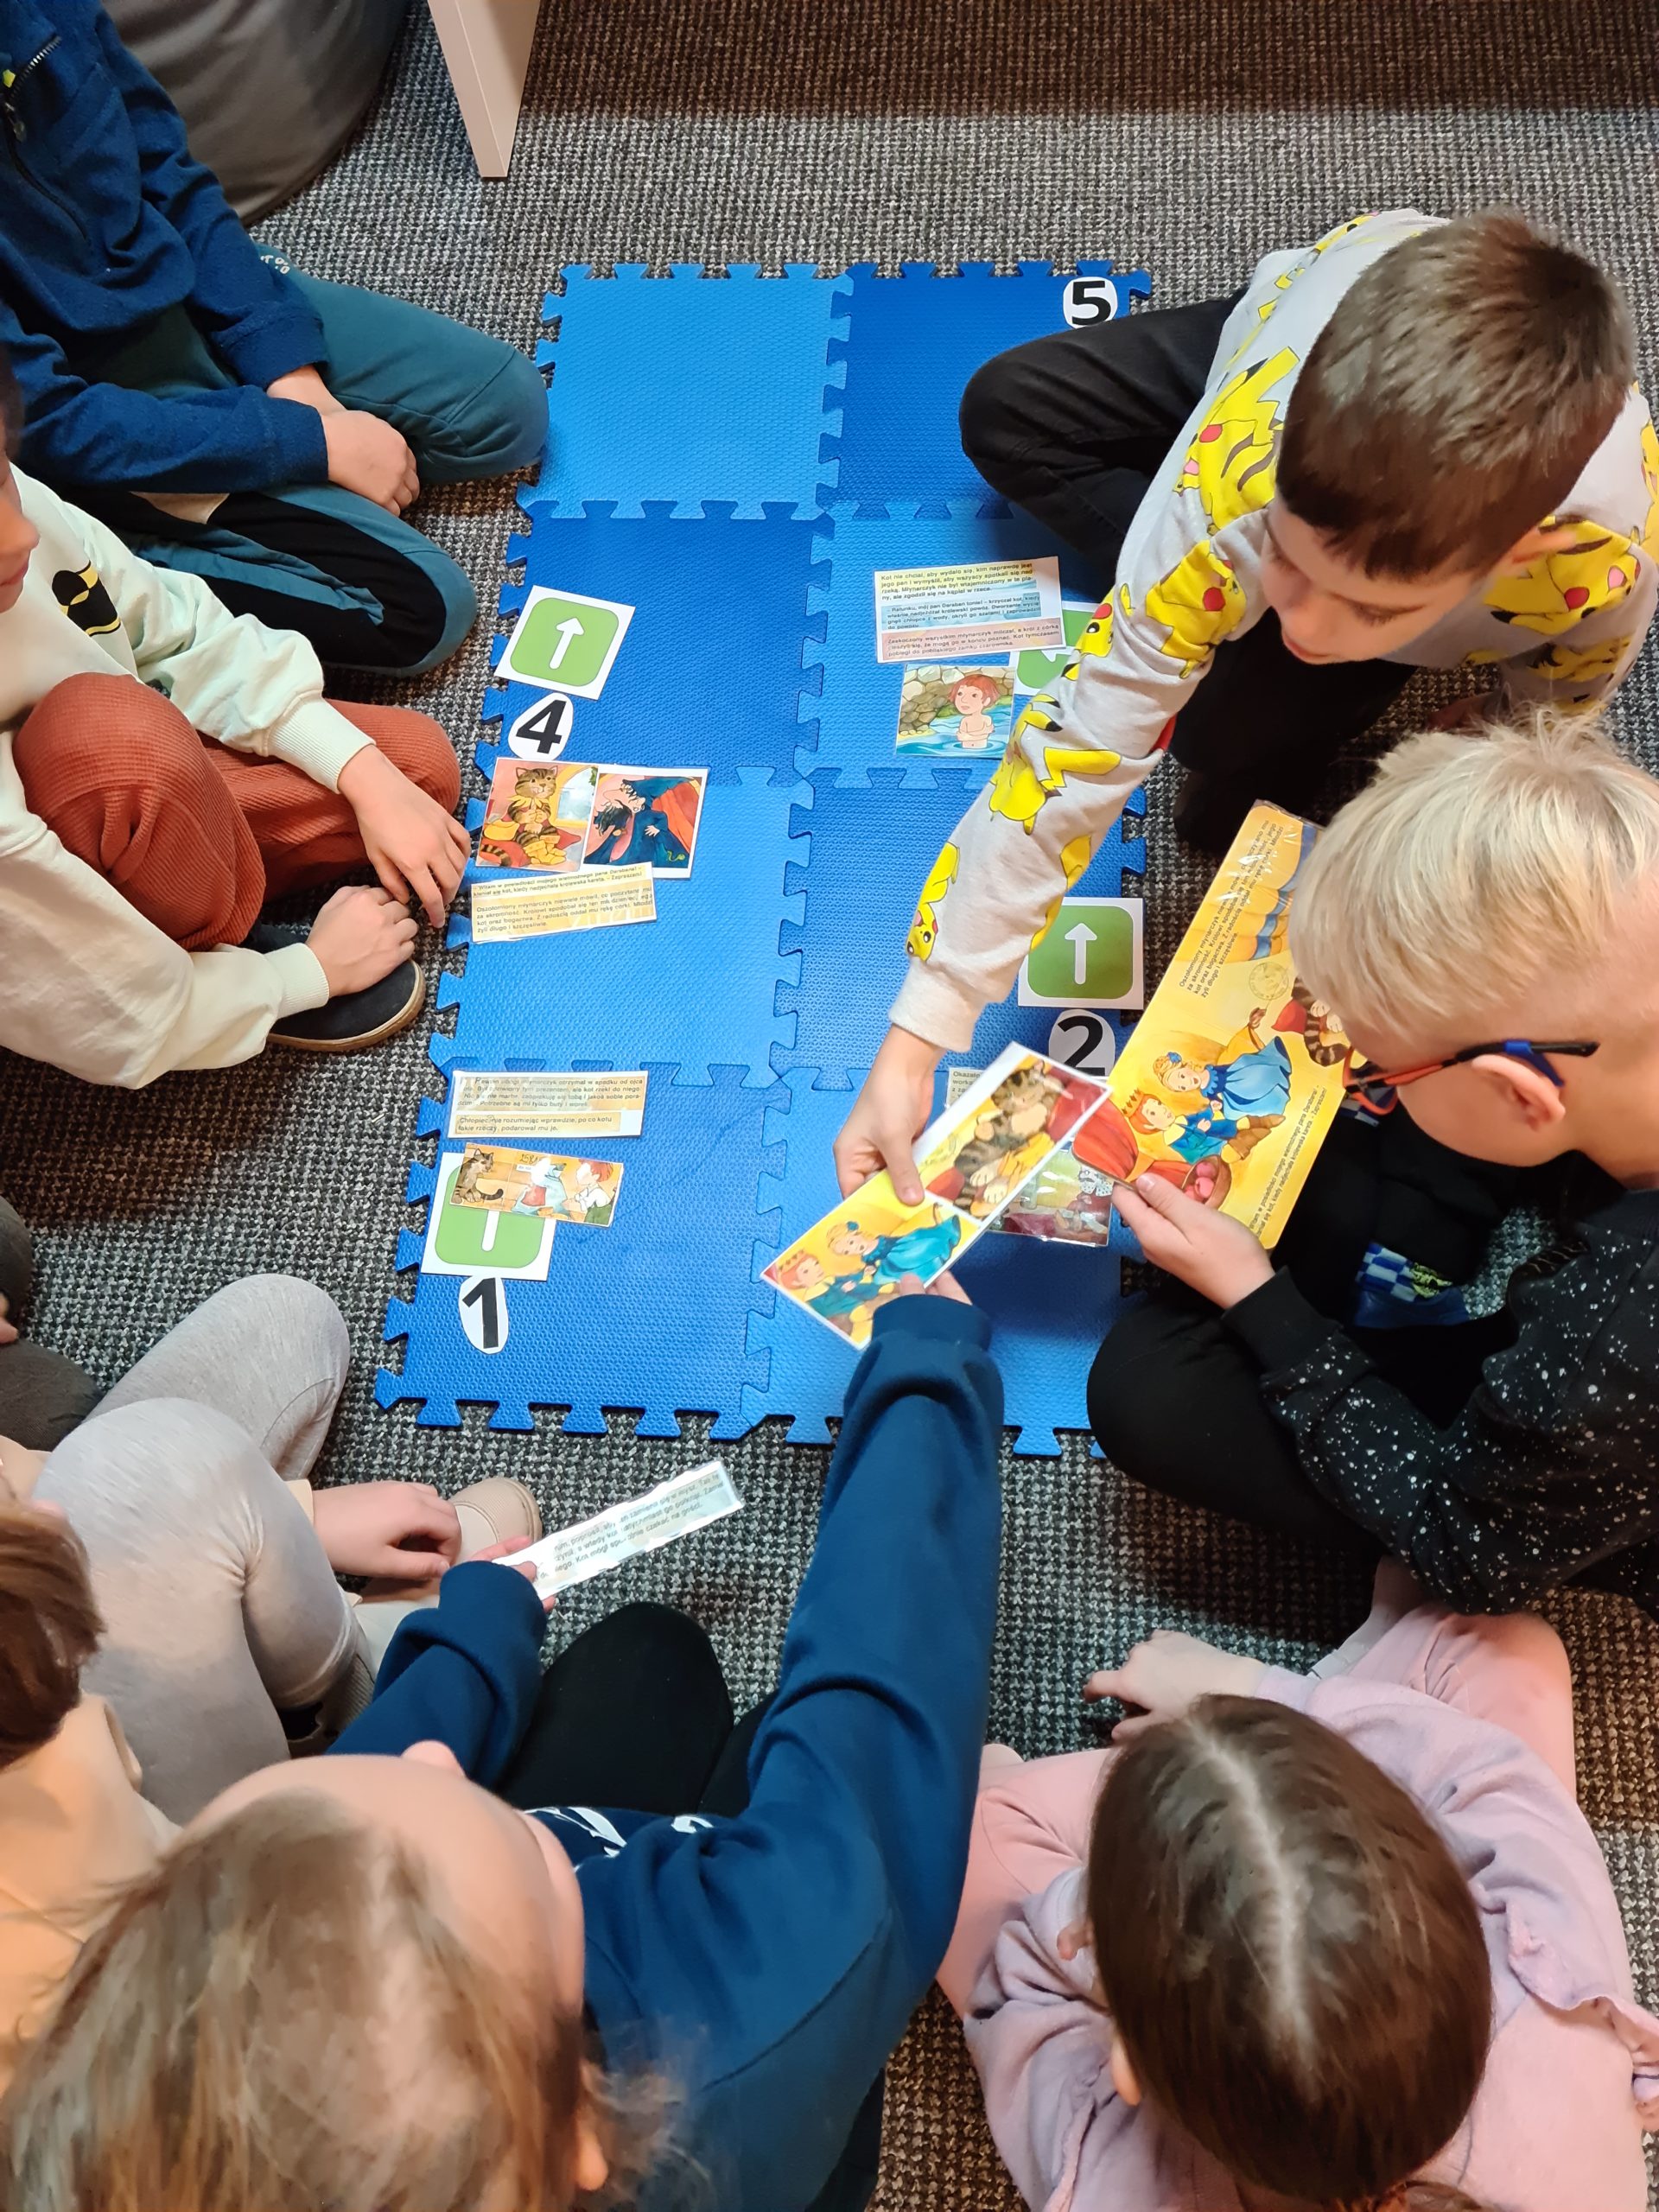 Dzieci siedzące w grupie na podłodze. Jedno dziecko trzyma otwartą książkę, inny chłopiec trzyma w ręku ilustrację.